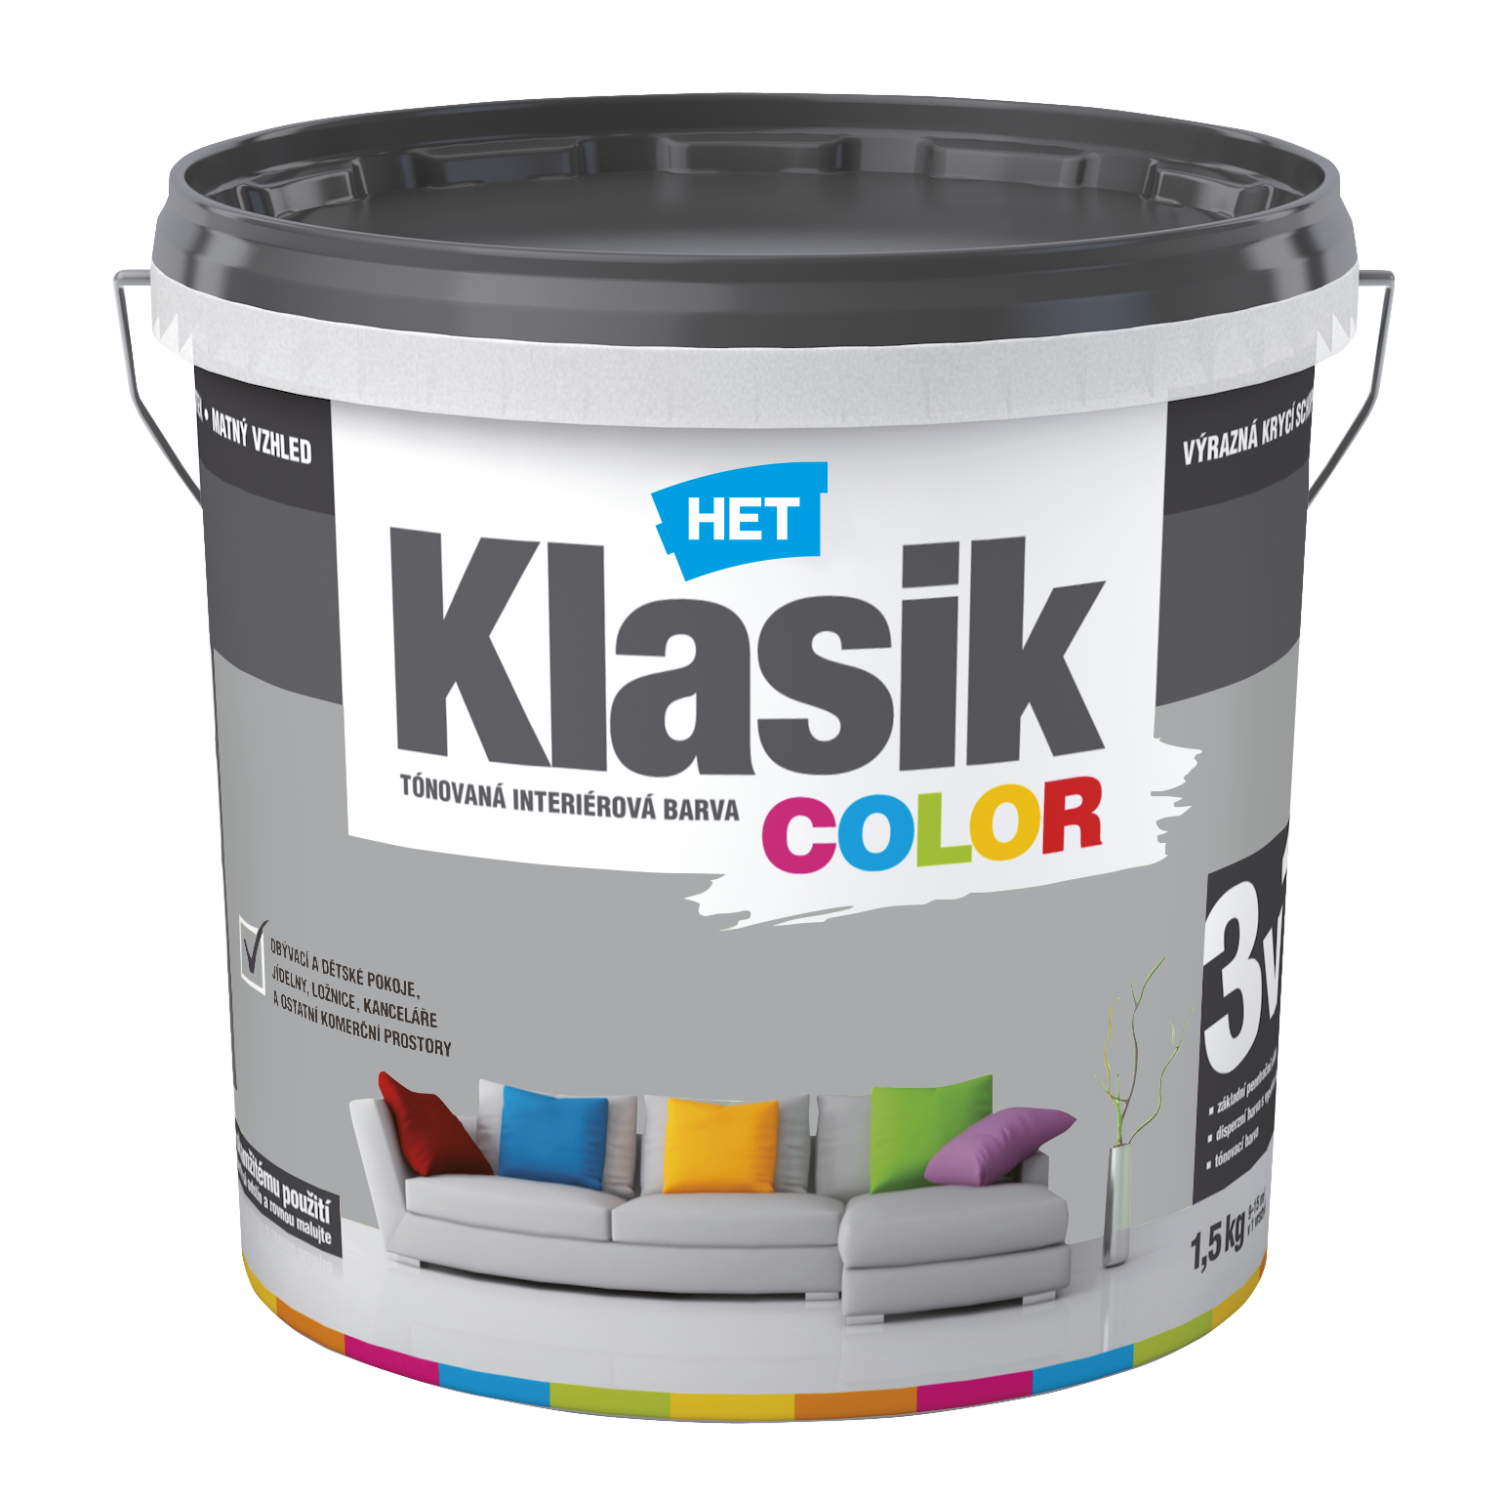 HET Klasik COLOR tónovaná interiérová akrylátová disperzná oteruvzdorná farba 1,5 kg, KC0147 - šedý bridlicový